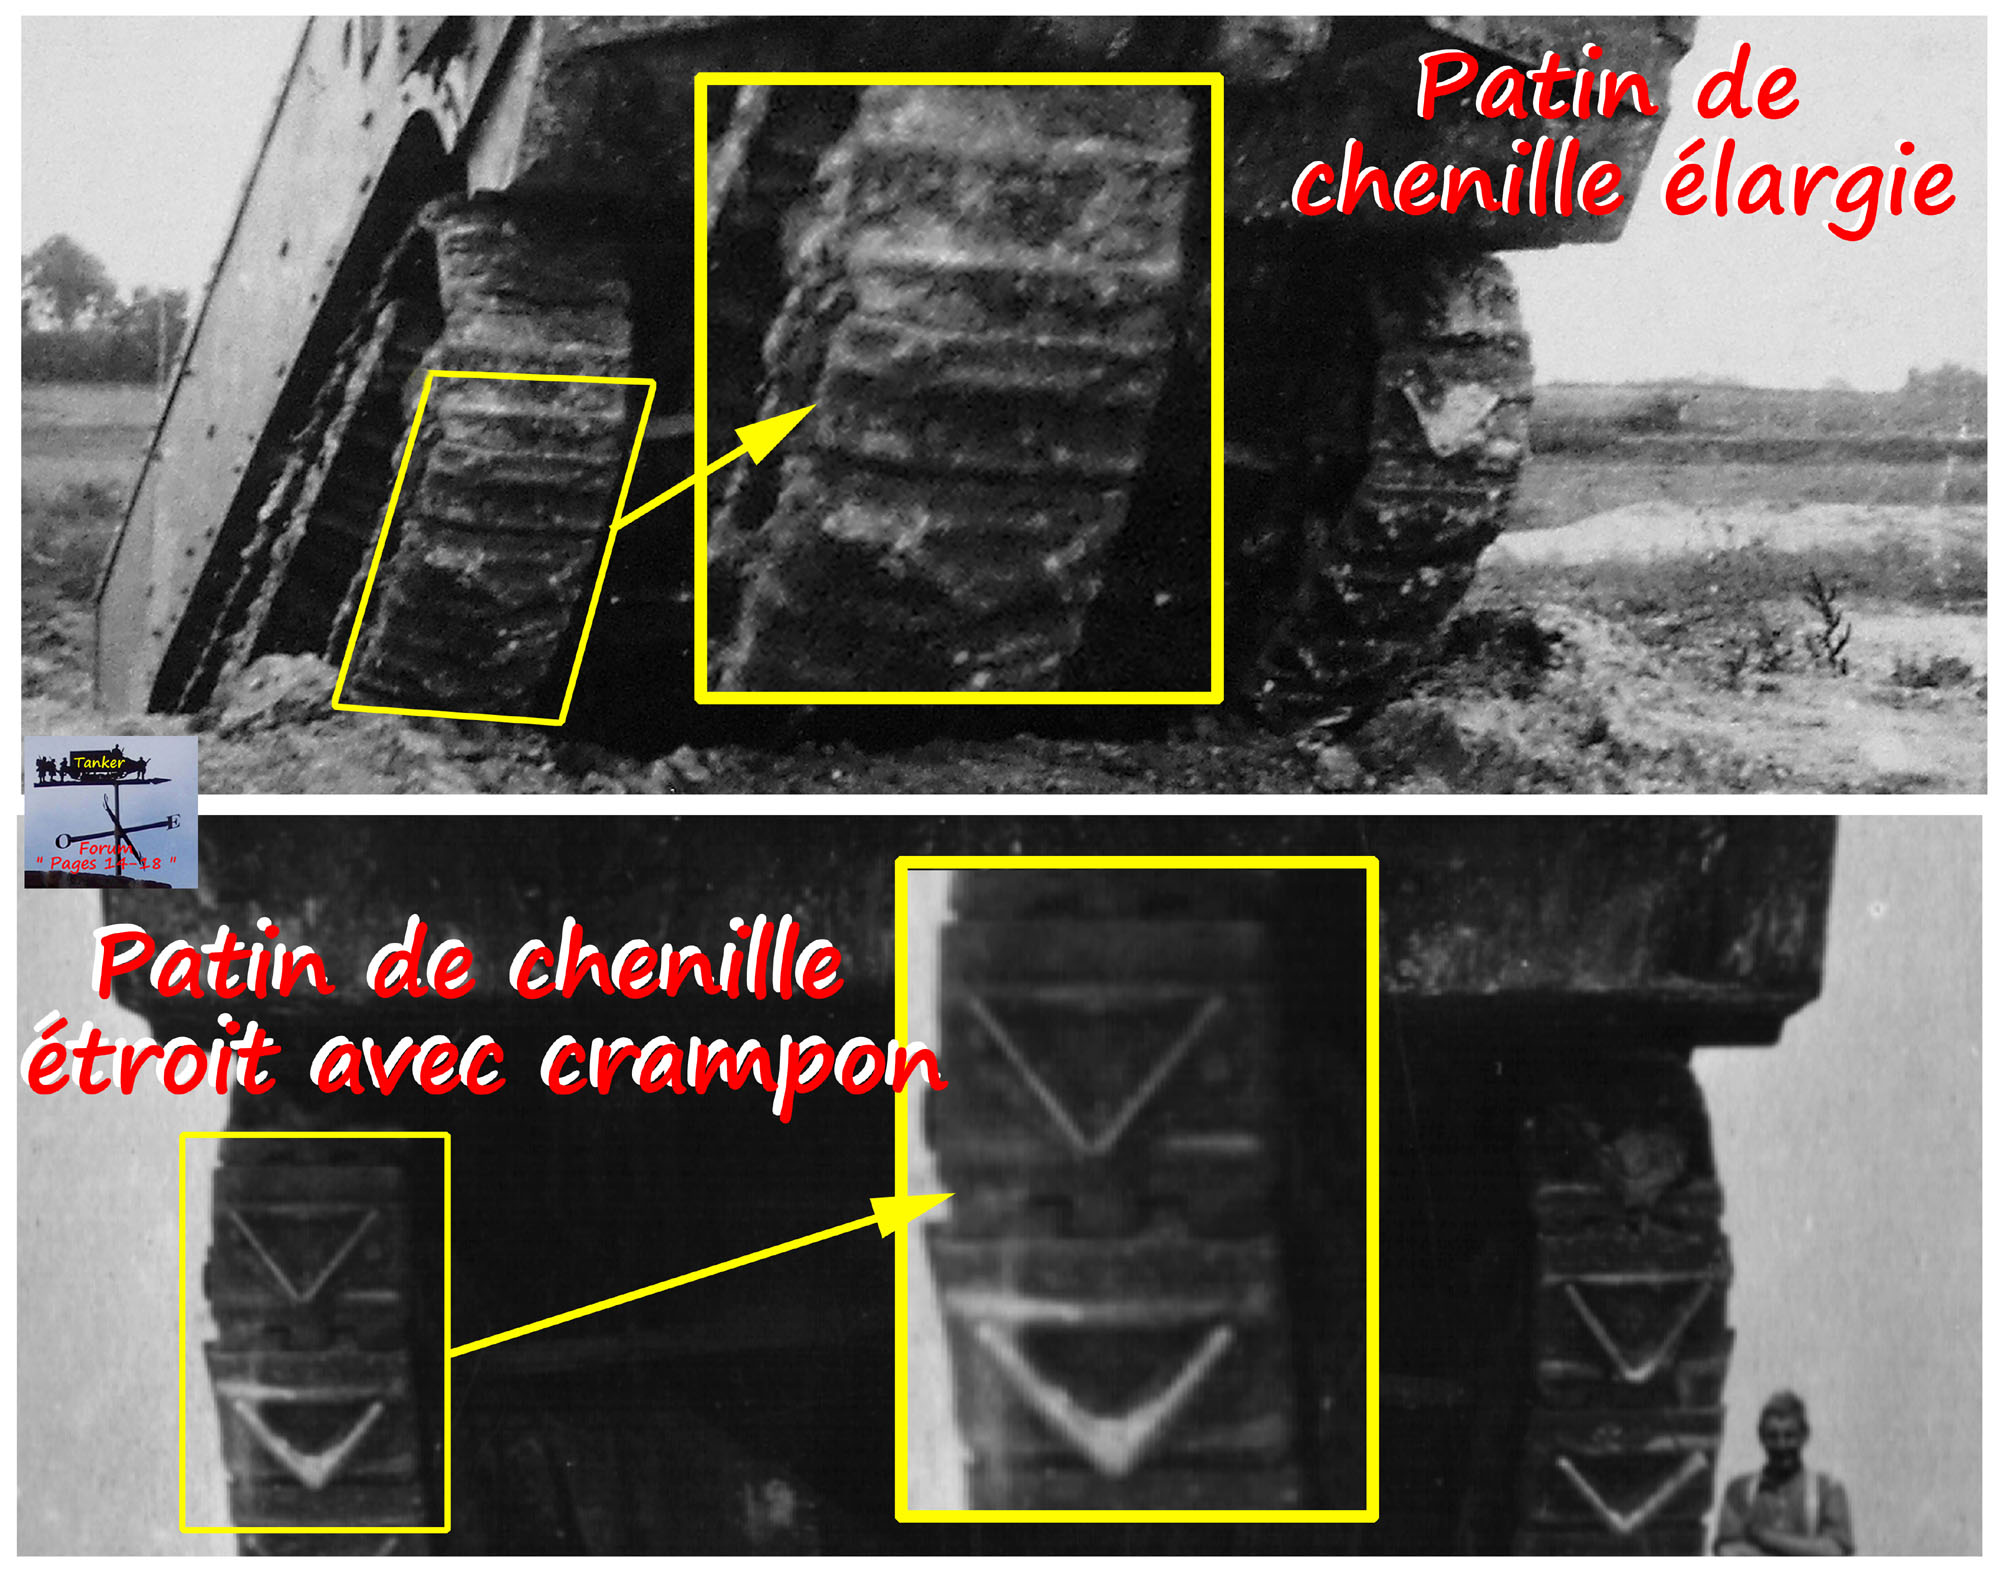 26 - Patins de chenille de St Chamond M1 .jpg